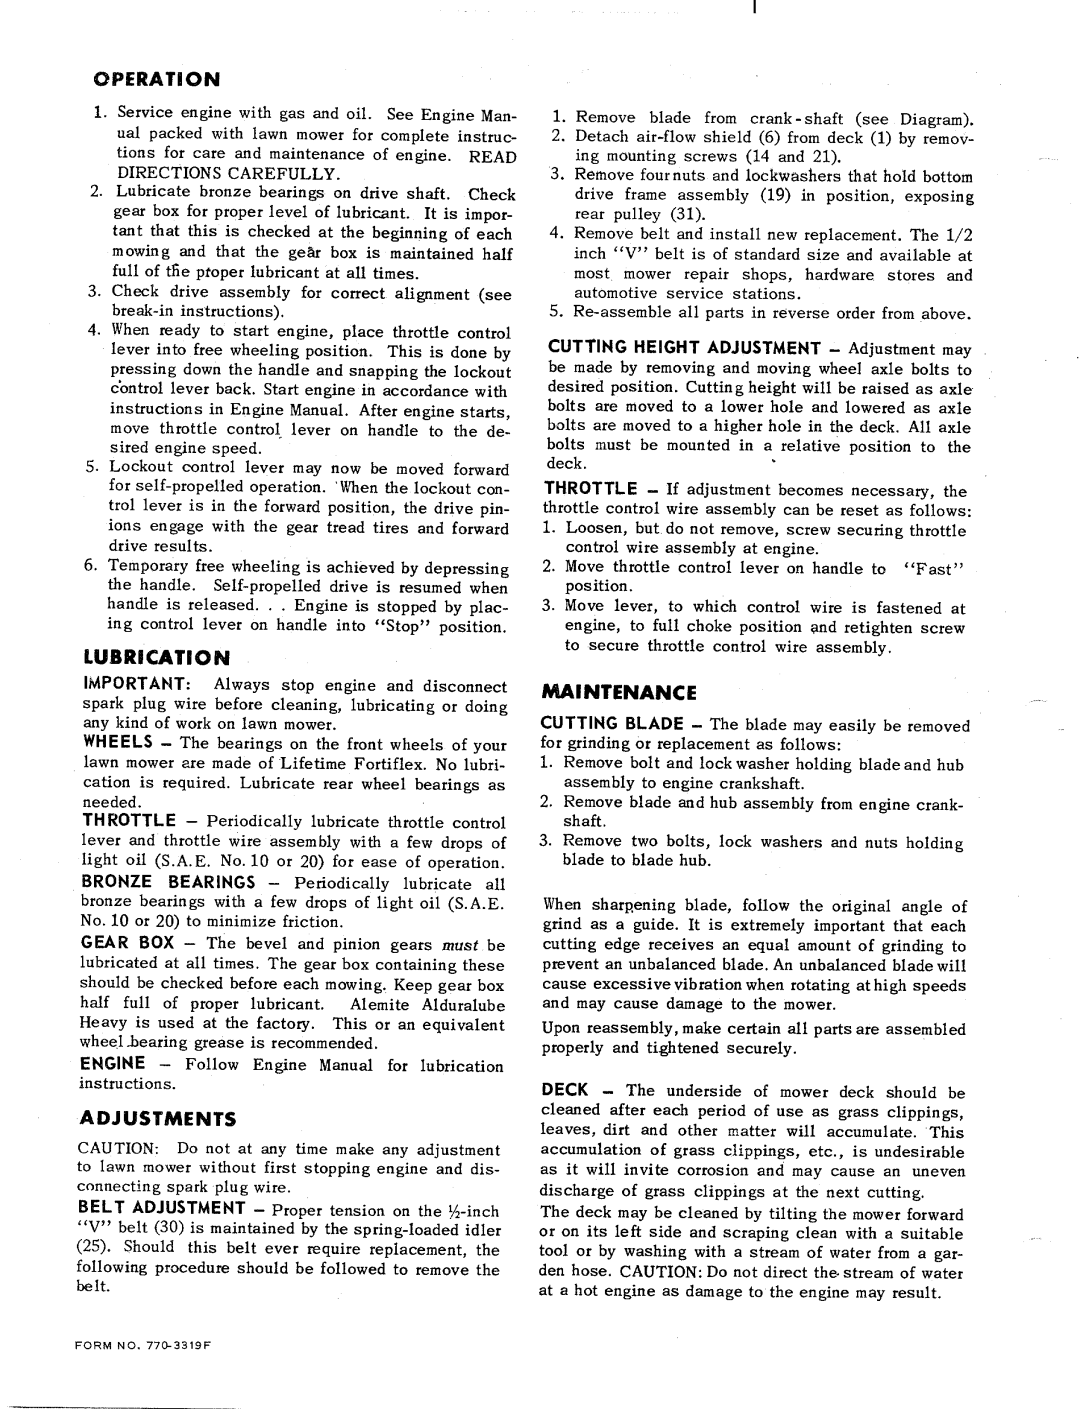 MTD 121-450-R manual 